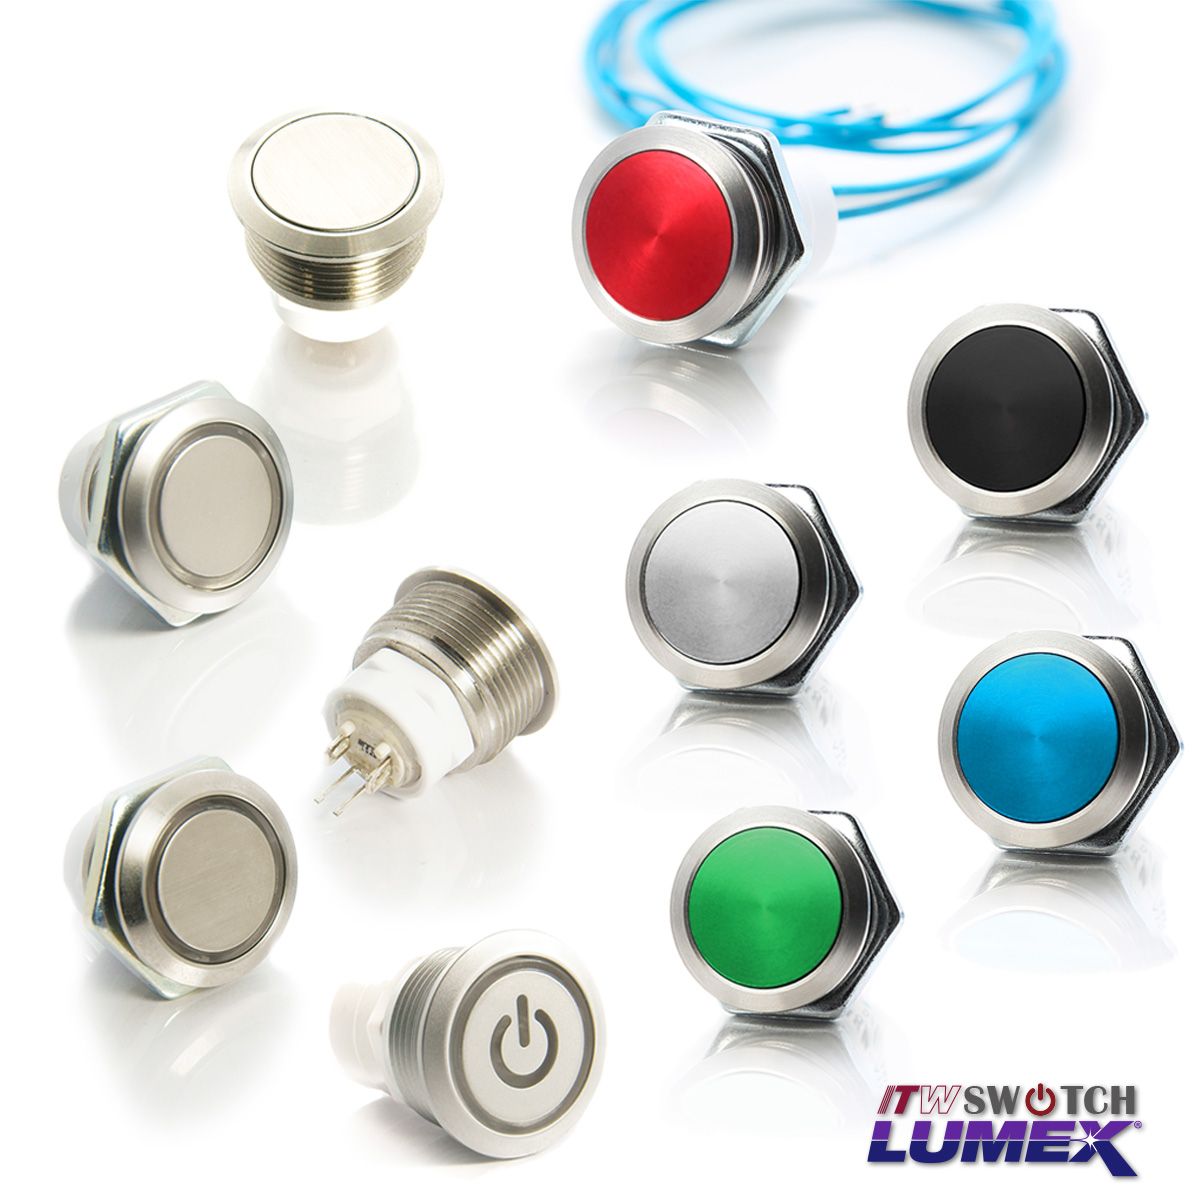 ITW Lumex Switchoferă întrerupătoare cu buton cu diferite opțiuni de design, toate având o decupare a panoului de 19 mm.